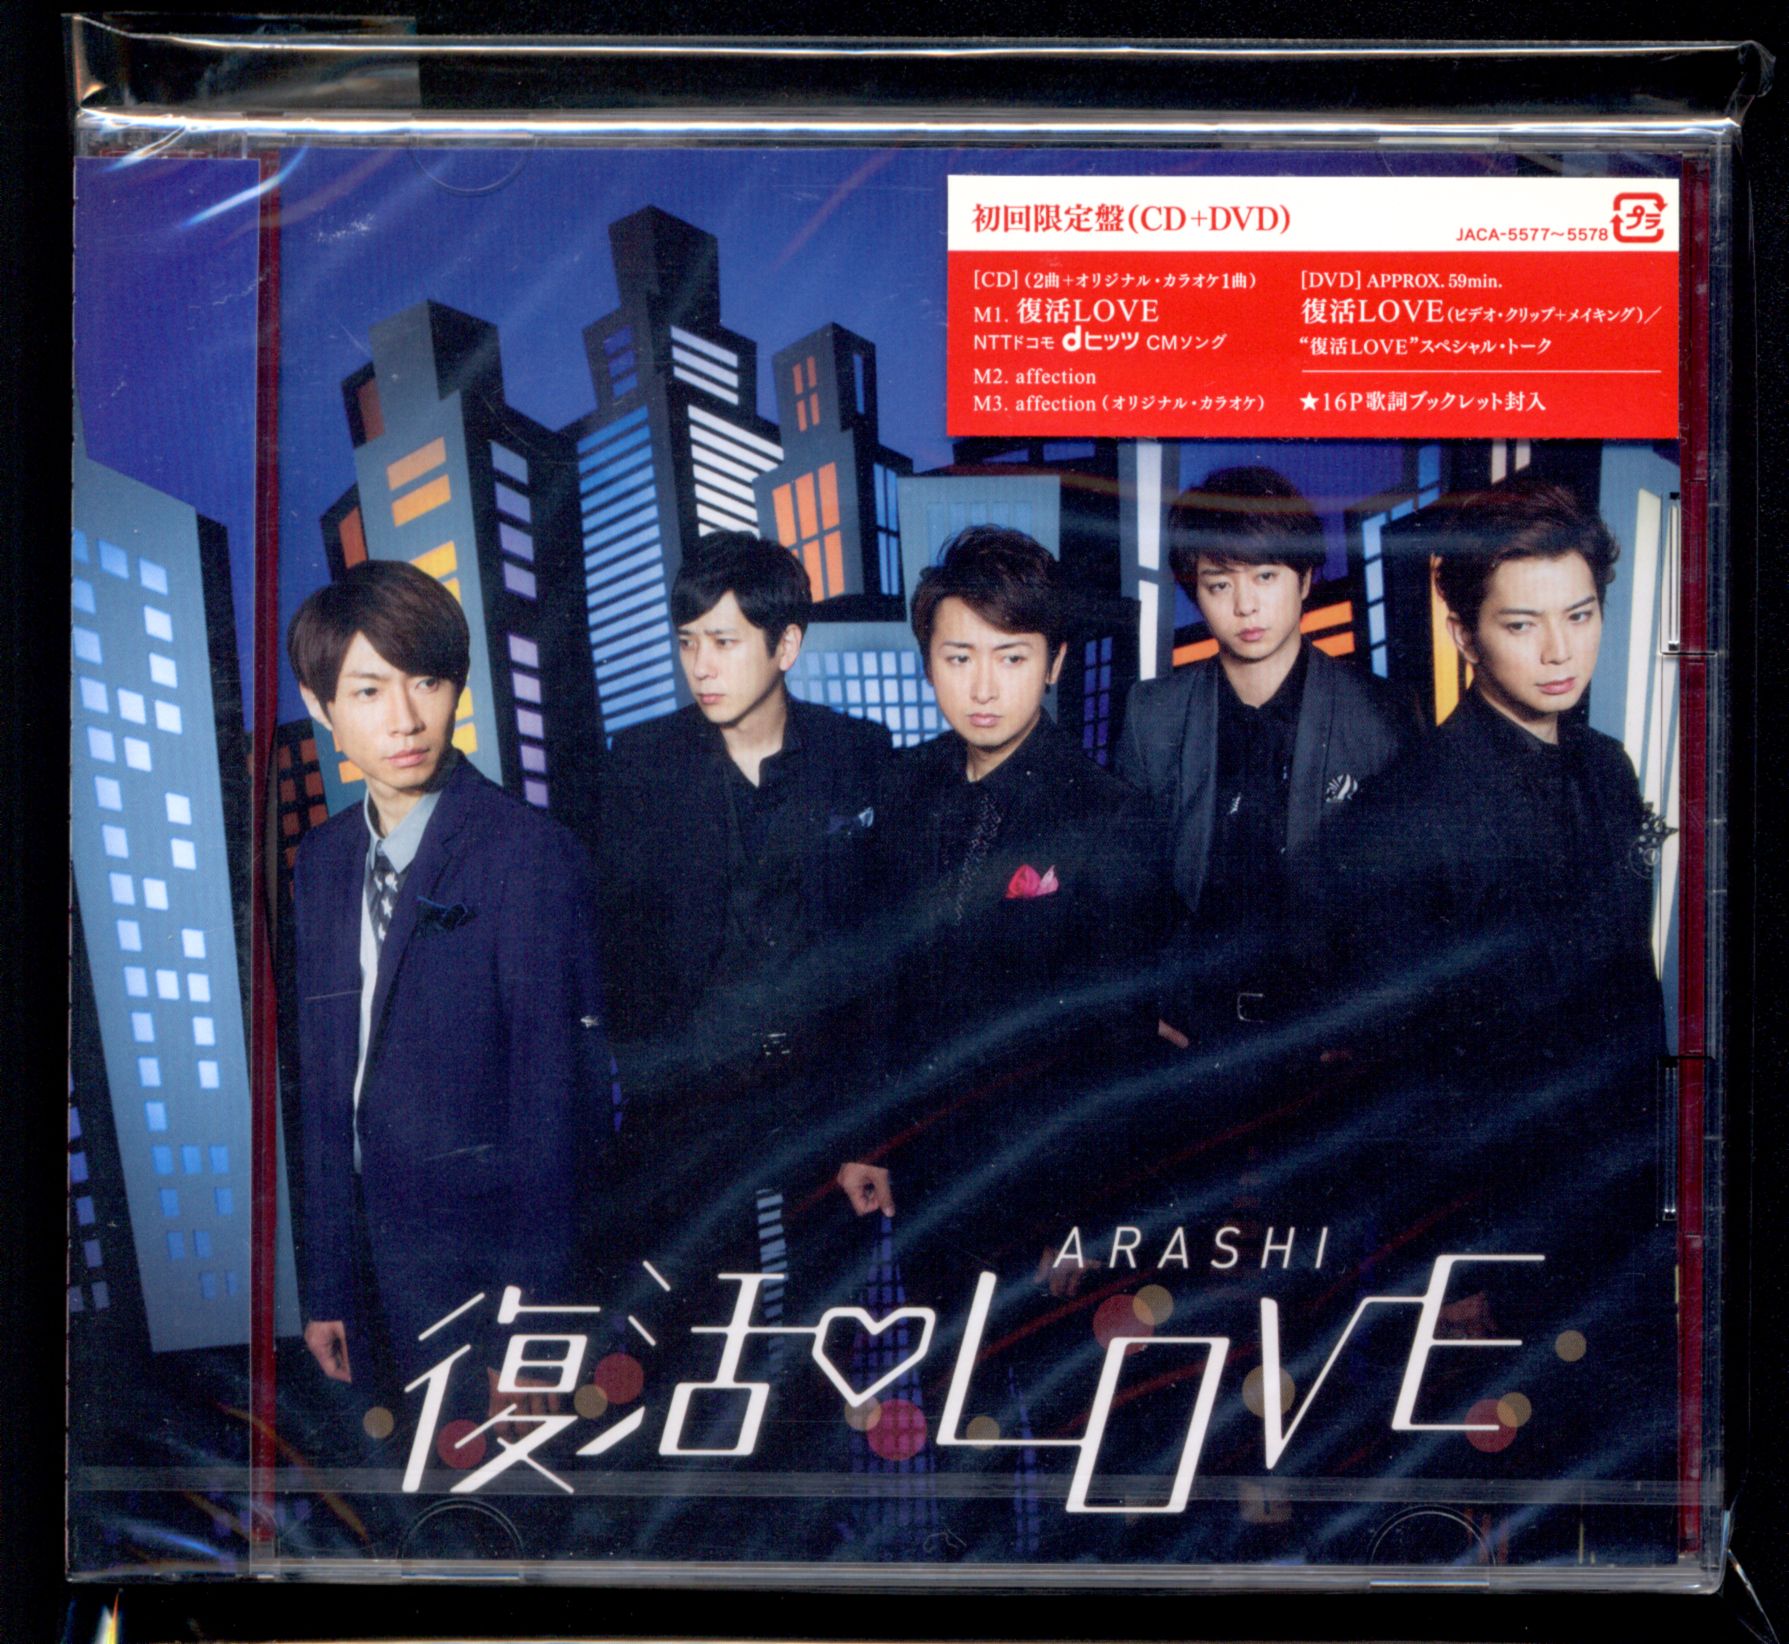 嵐 ARASHI 復活LOVE 初回限定版CDDVD - 邦楽